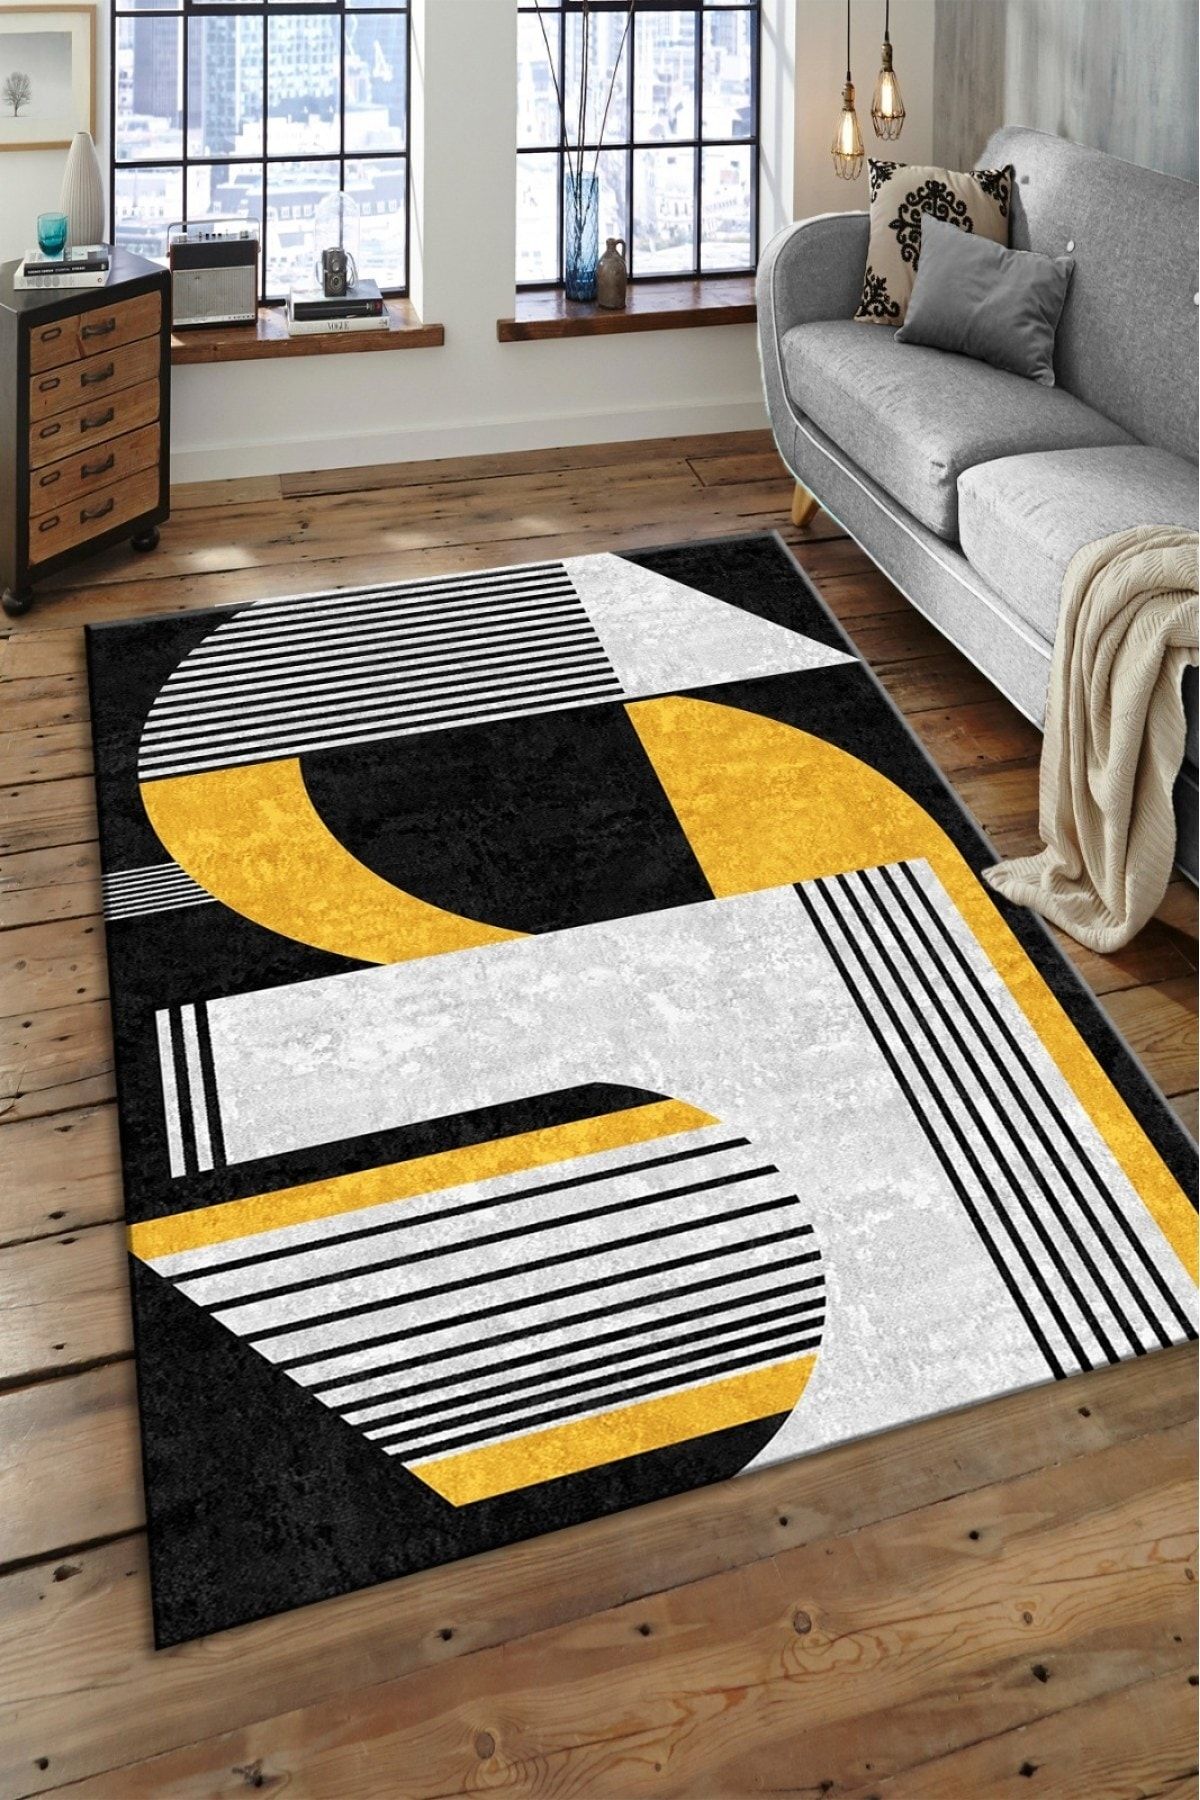 floor mat for living room